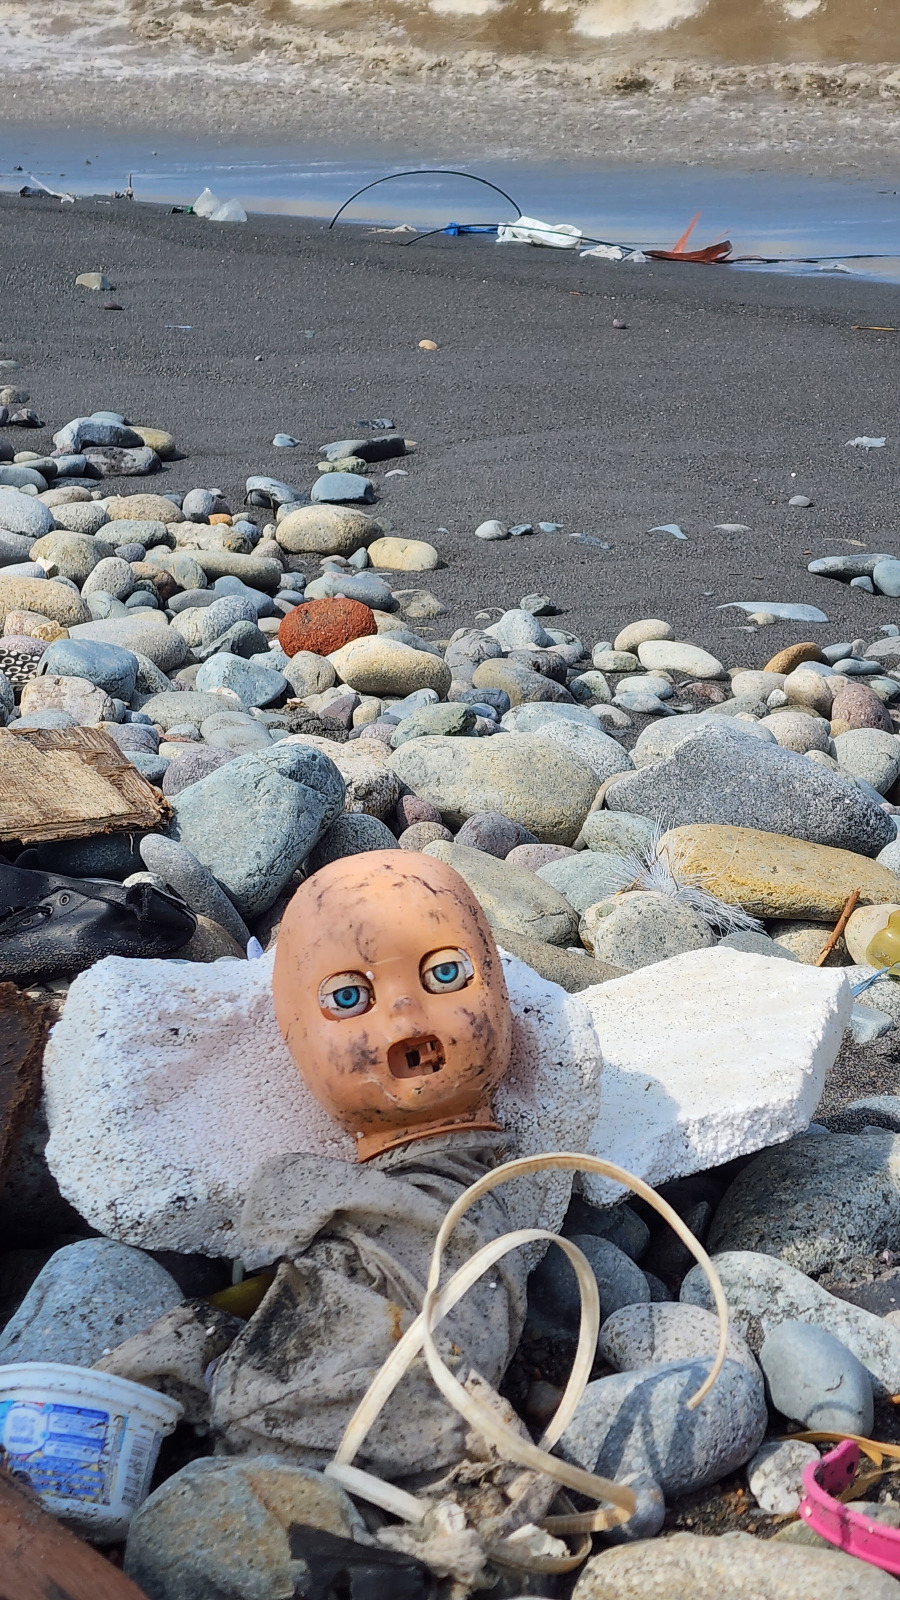 Toneladas de basura en playas y en el mar por falta de presupuesto en municipalidades.